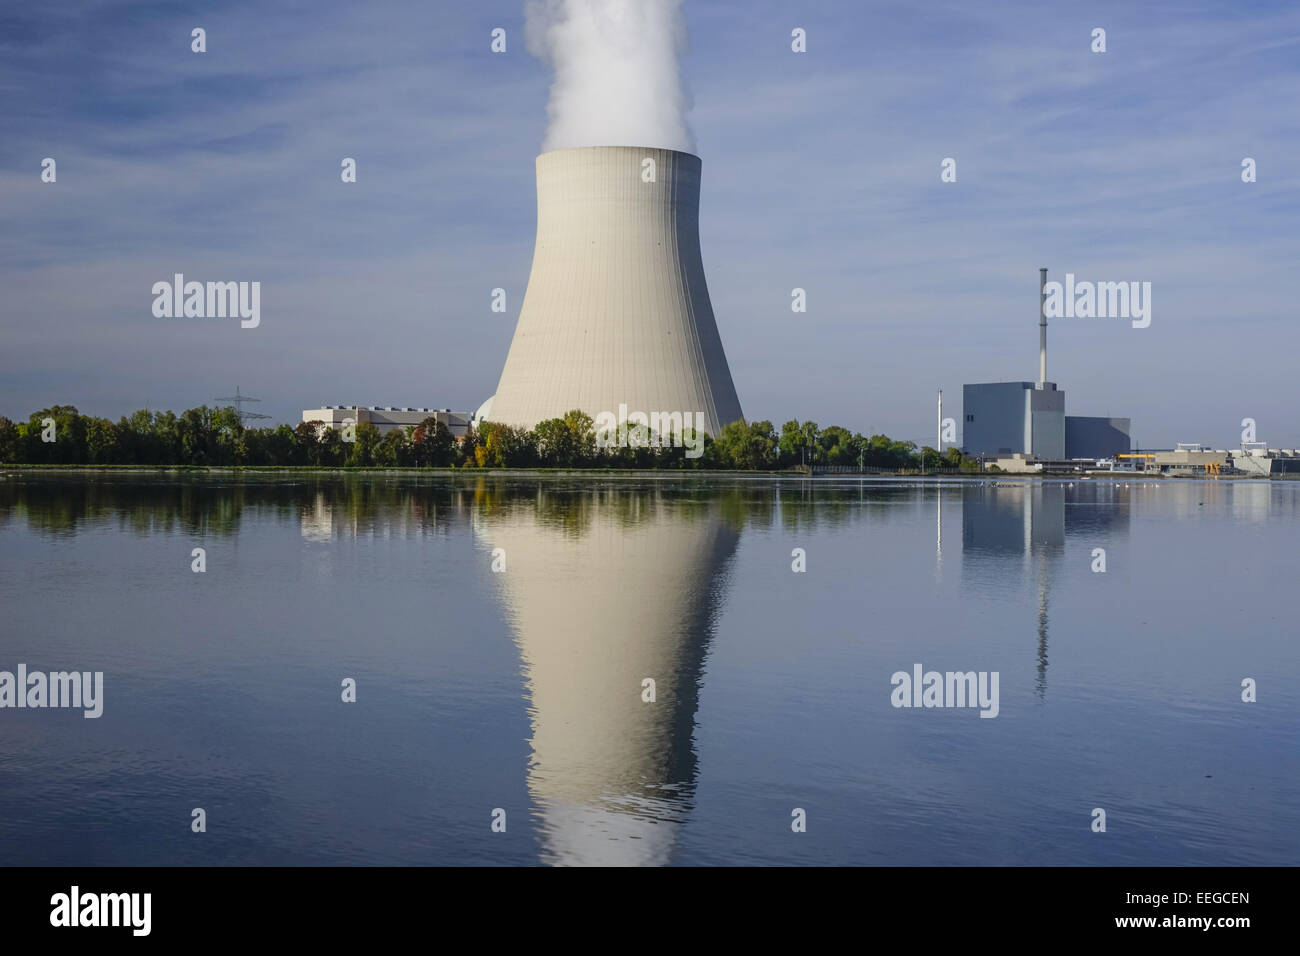 Ohu Atomkraftwerk in Landshut, Bayern, Deutschland, Nuclear power plant Ohu près de Landshut, Bavière, Allemagne, nucléaire, puissance, Pl Banque D'Images